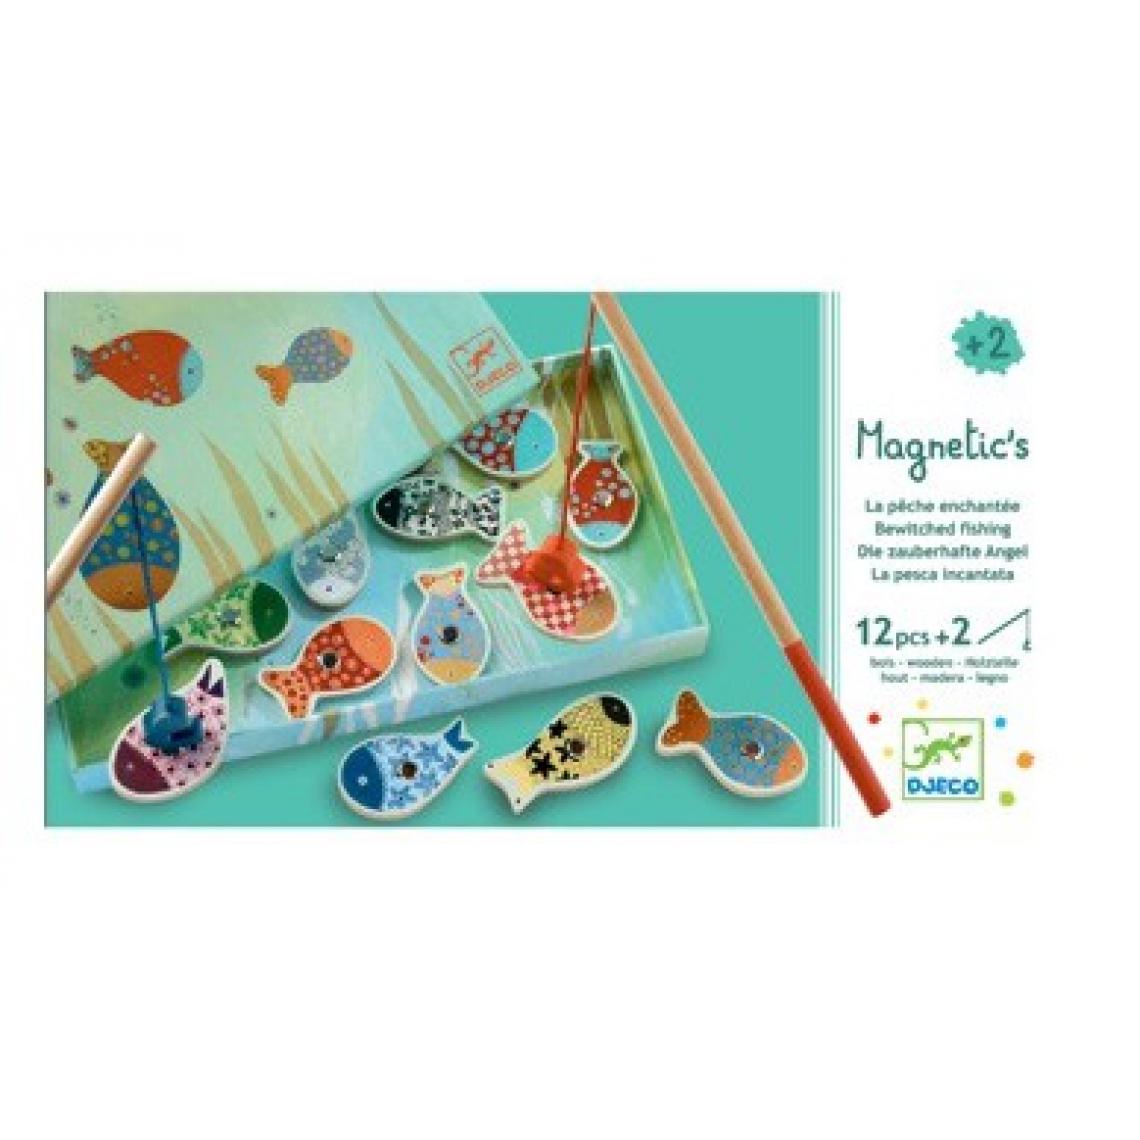 Djeco - Magnetic s fishing dream - Jeux éducatifs